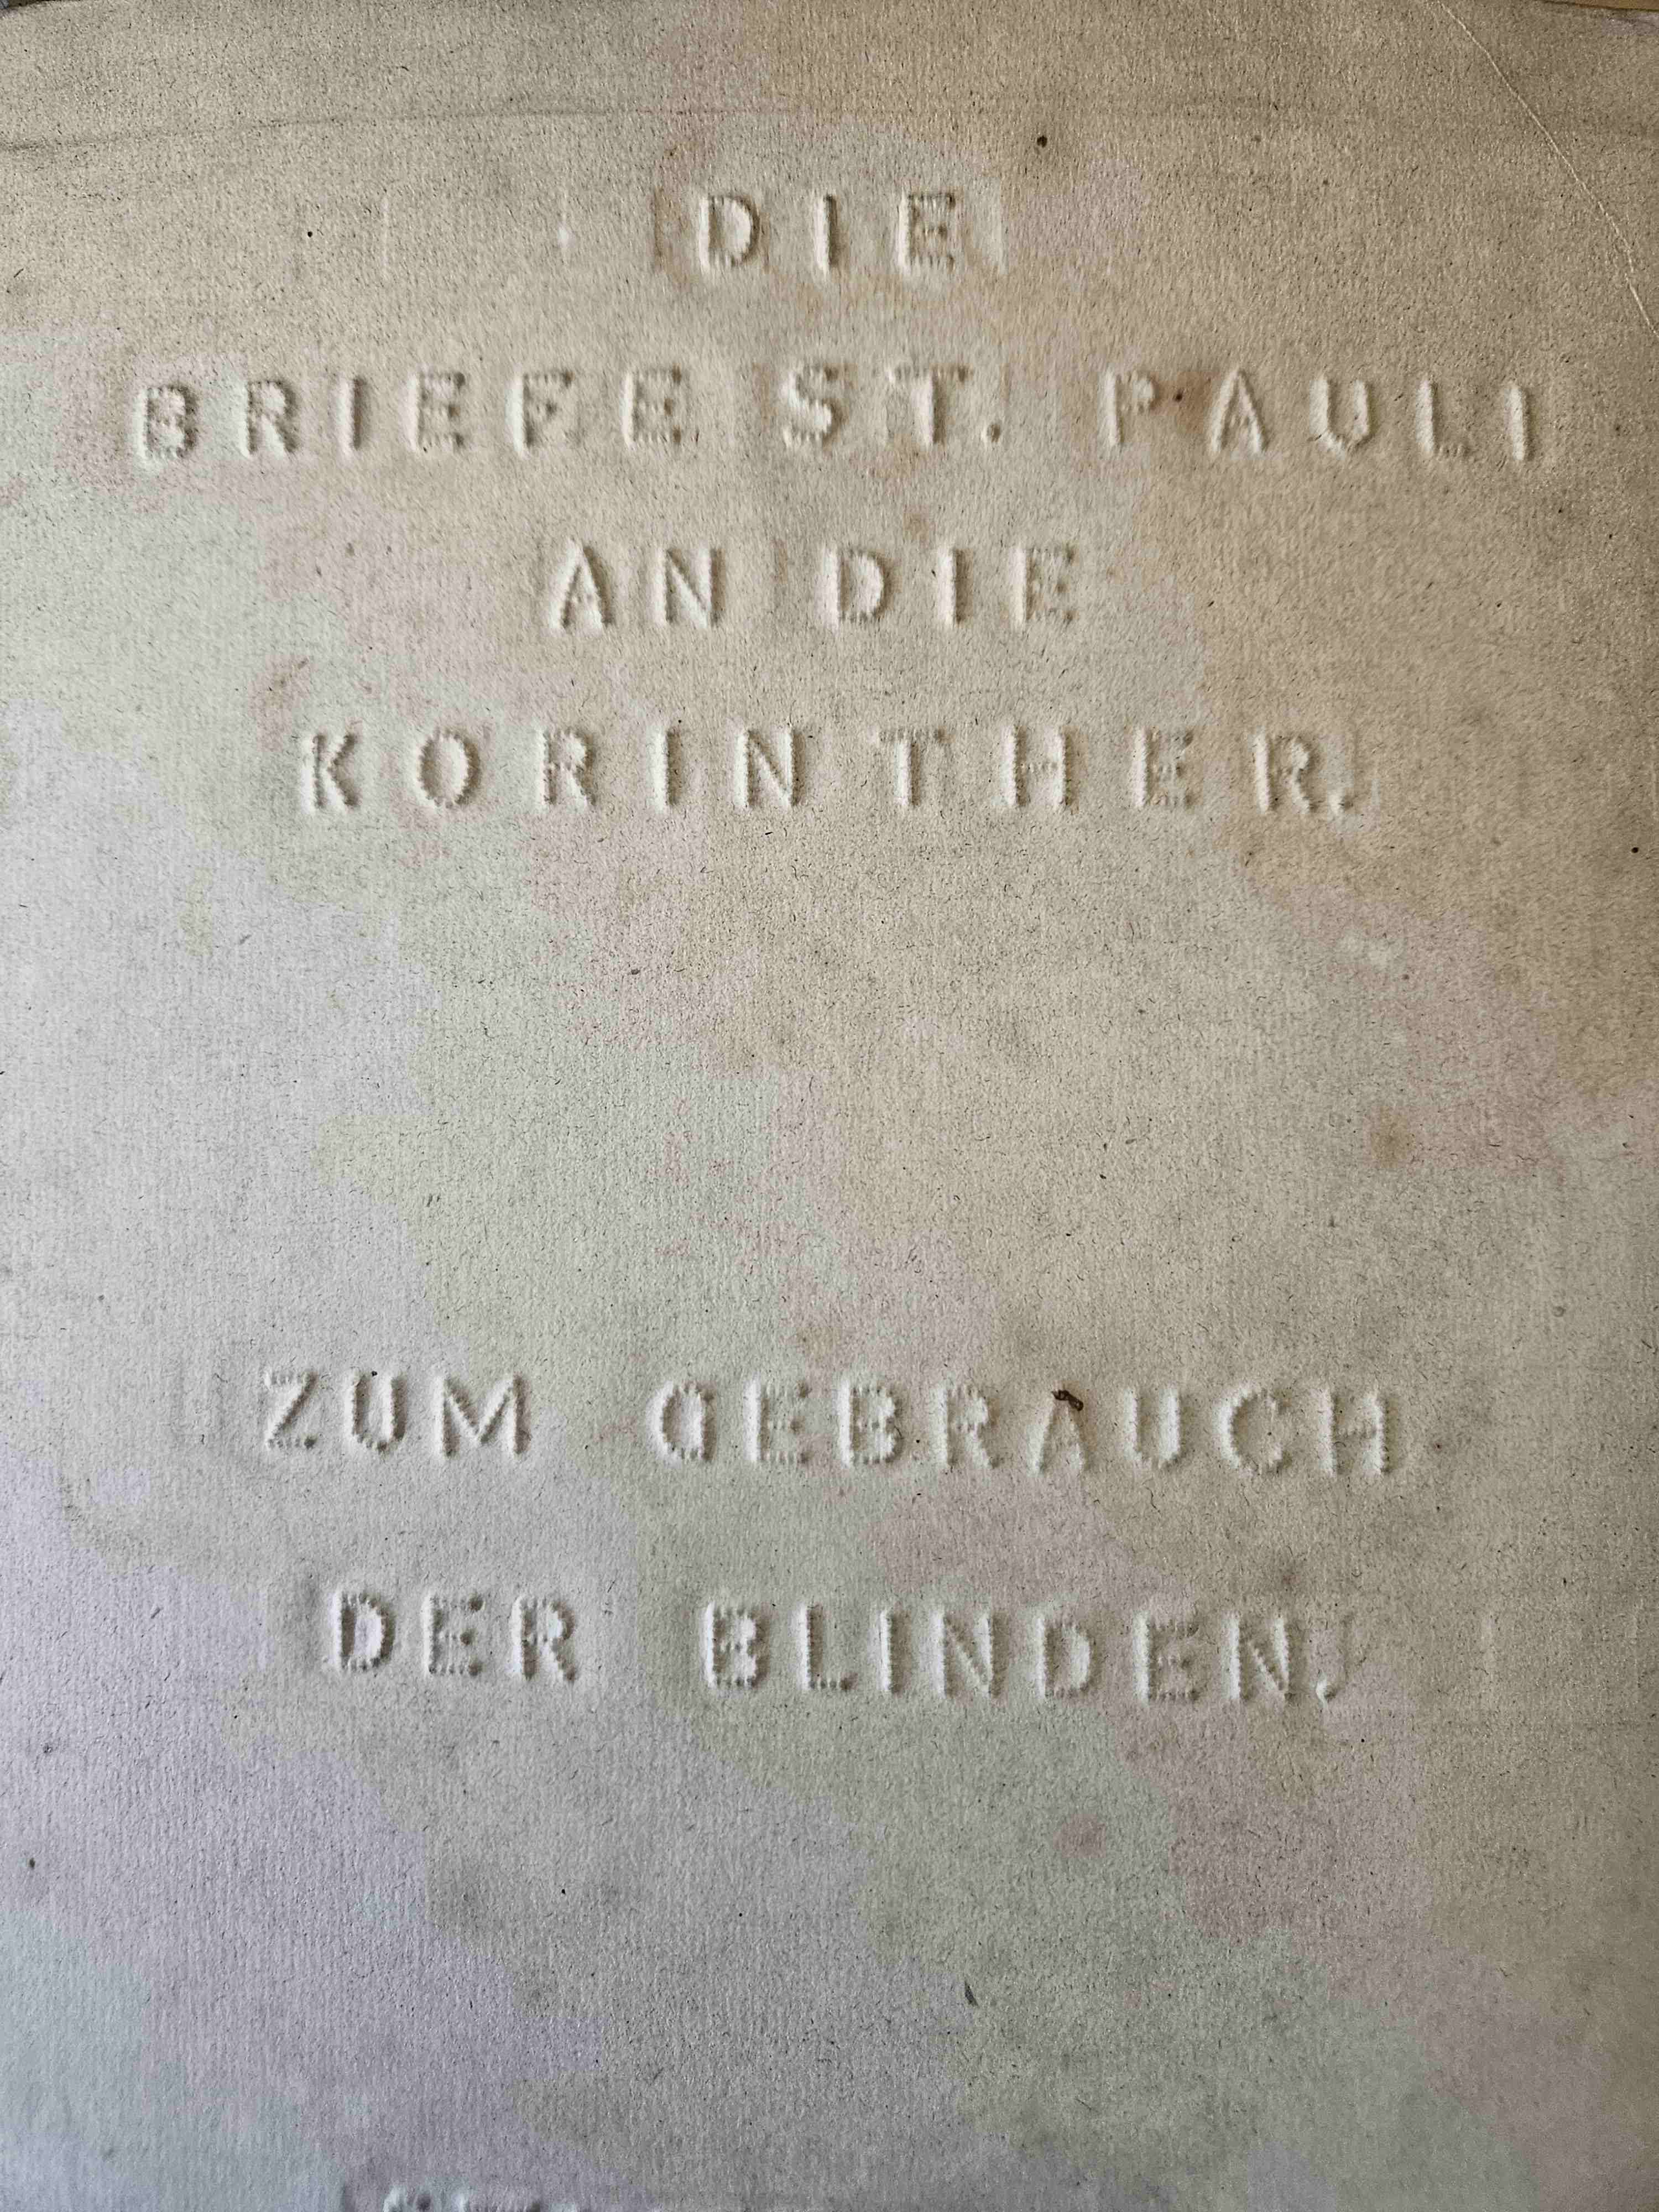 Brief des Paulus an die Korinther - Bibel 1873 - Reliefschrift (Lutz Henschel, Deutsches Blinden-Museum CC BY-NC-SA)